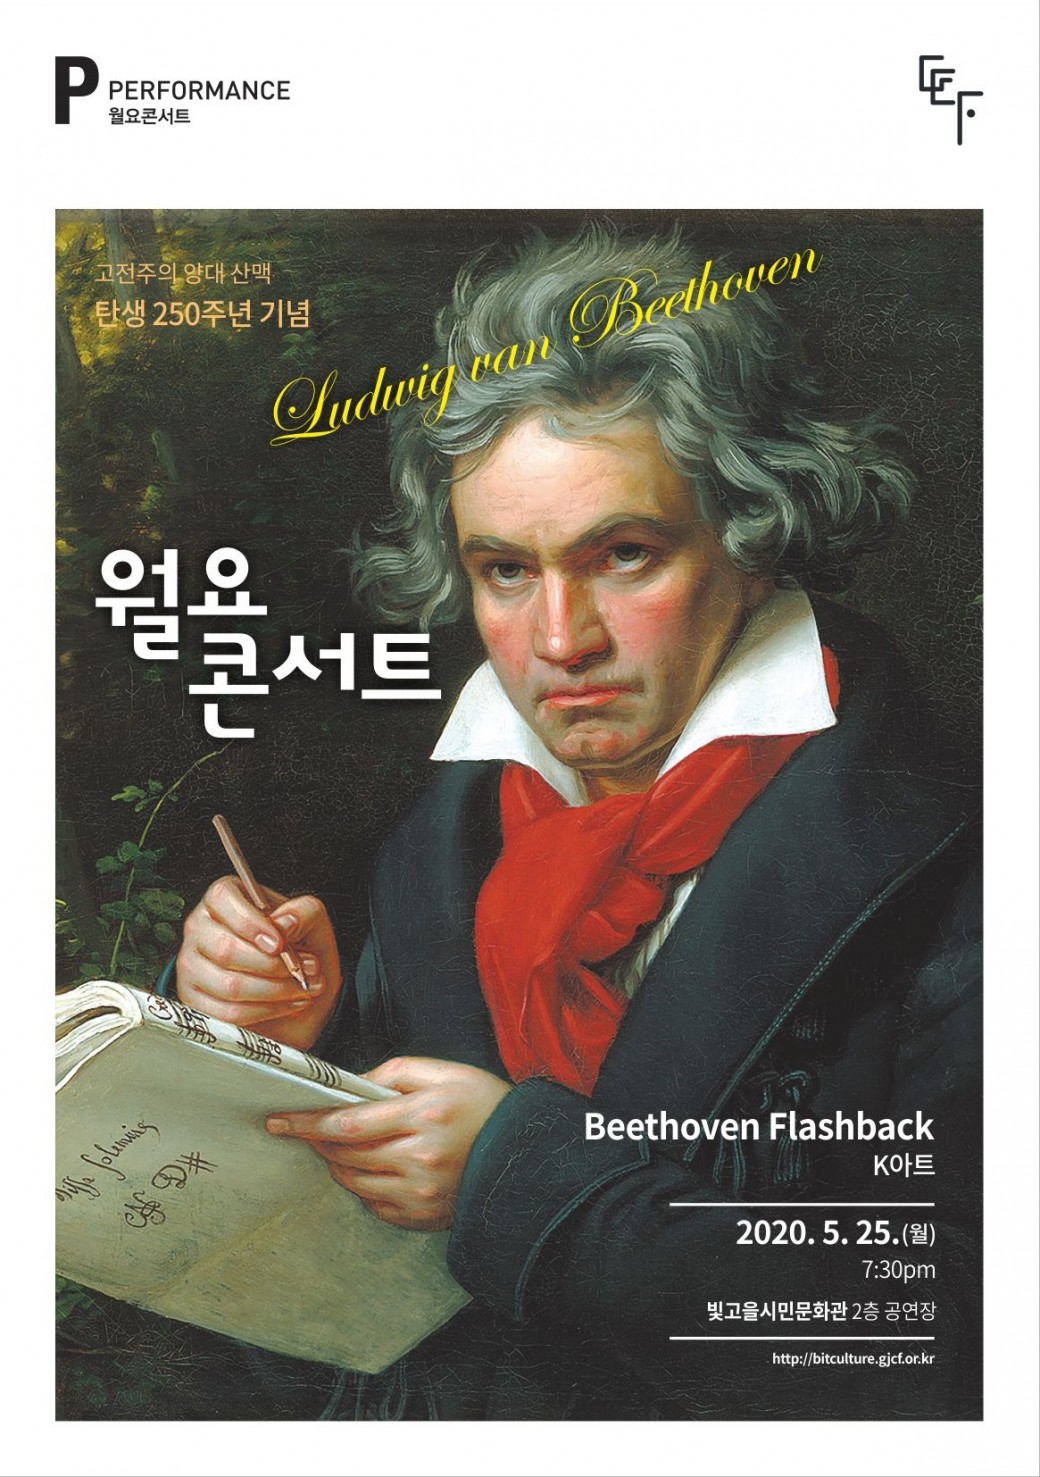 월요콘서트 2회차 "Beethoven Flashback"